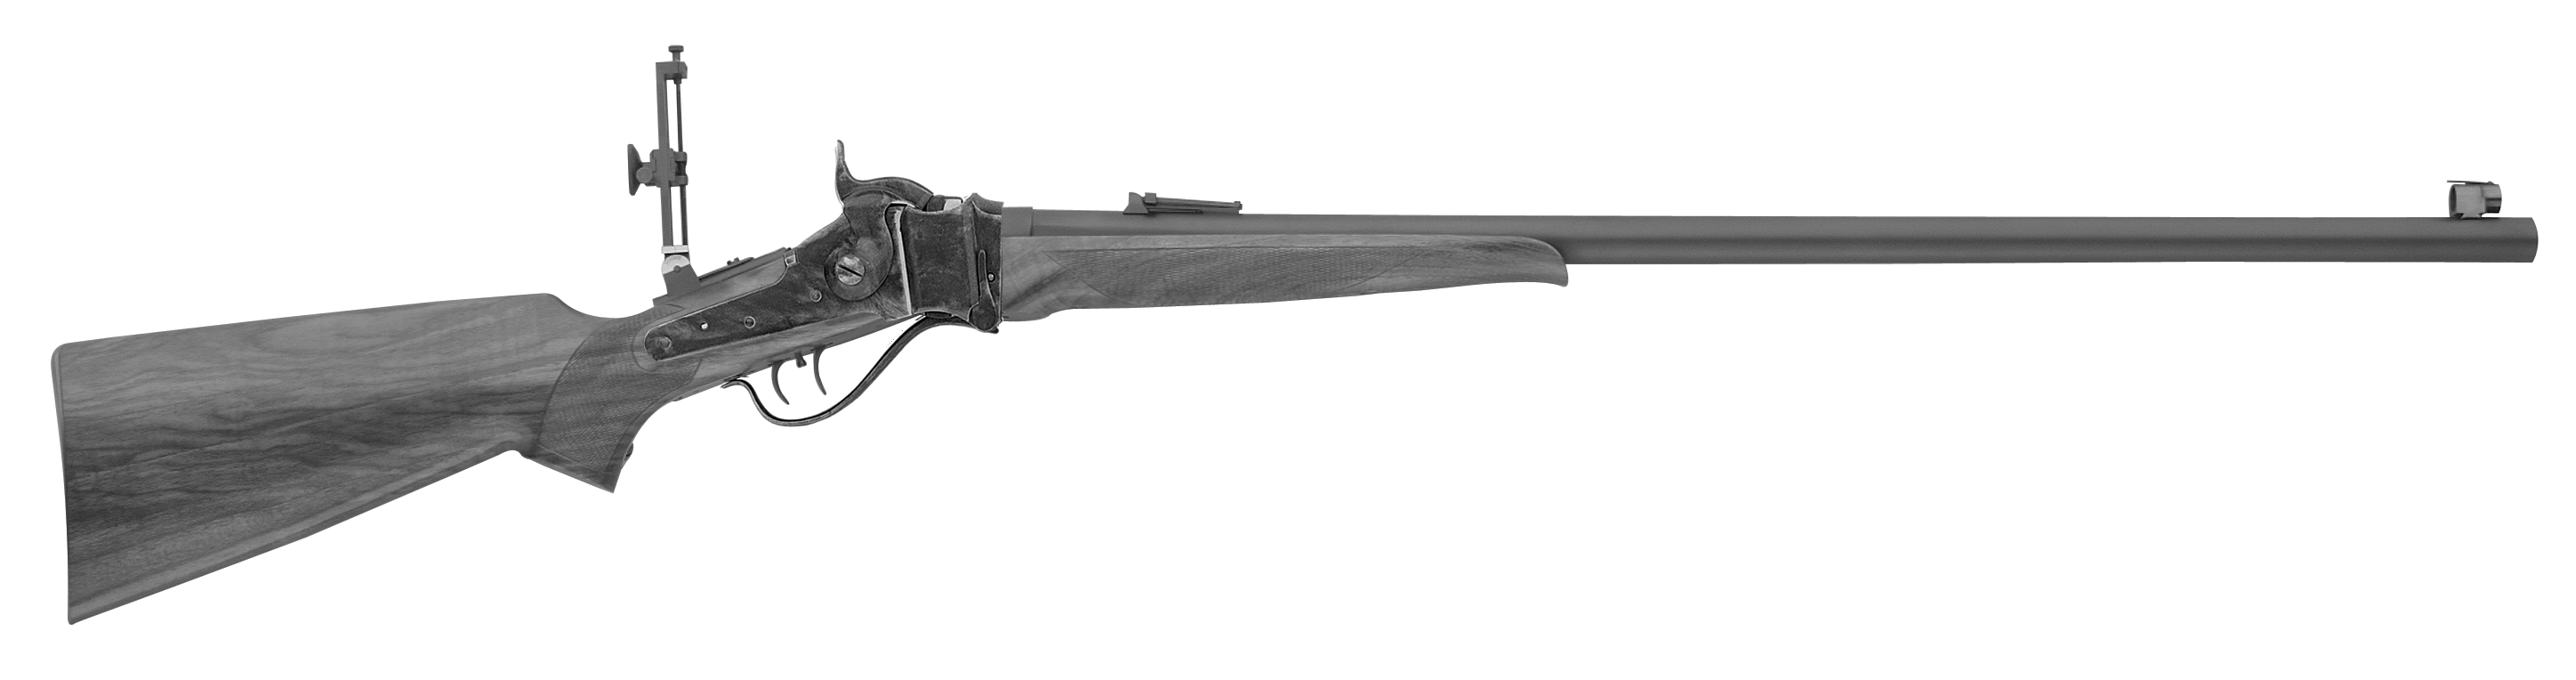 Sharps No. 2 Sporting Rifle